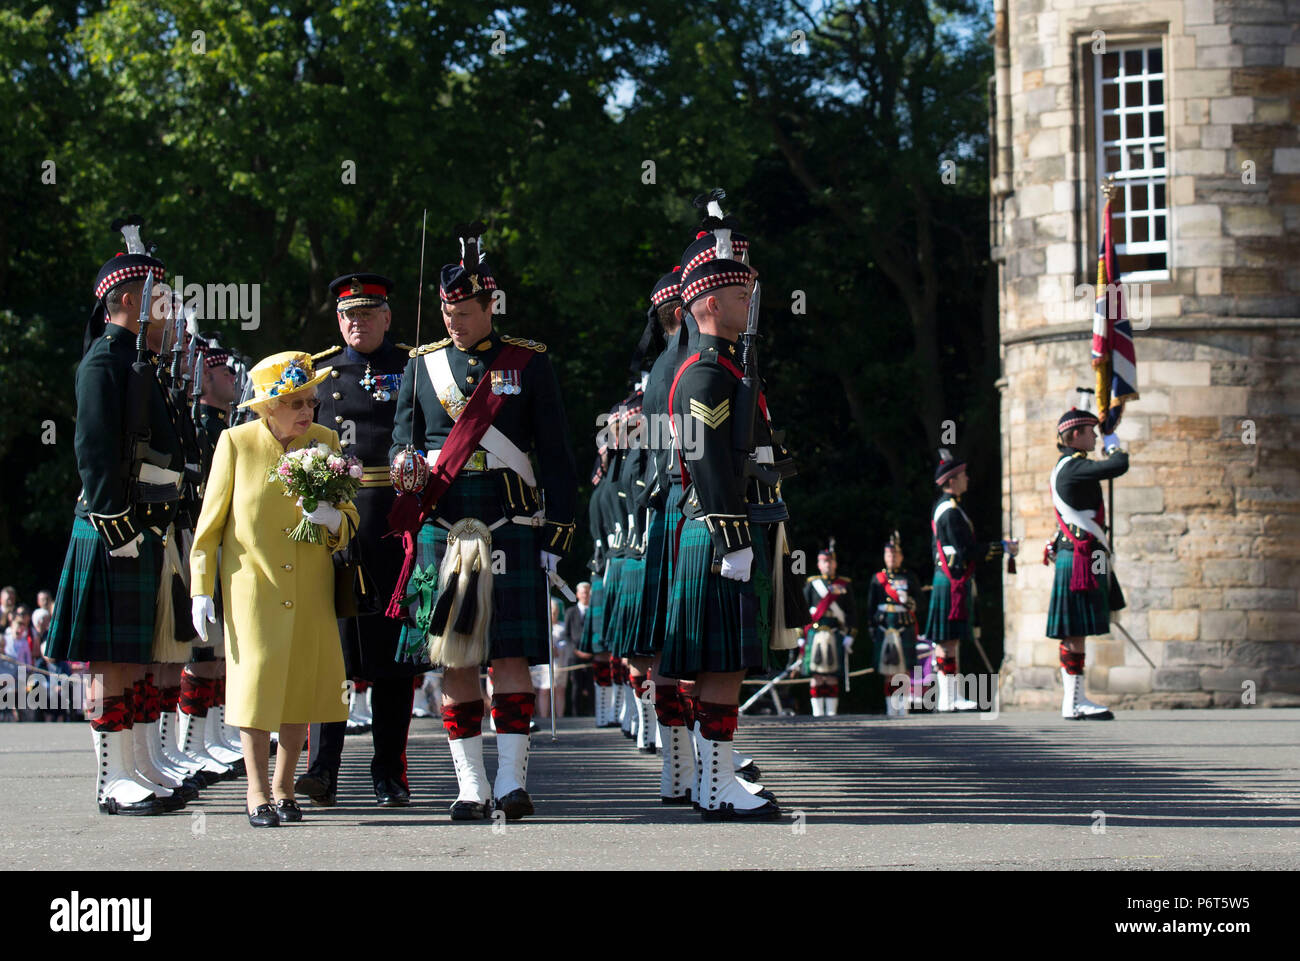 Queen Elizabeth II riceve le chiavi da Edimburgo di Lord Provost Frank Ross durante la cerimonia delle chiavi presso il Palazzo di Holyroodhouse di Edimburgo. Foto Stock